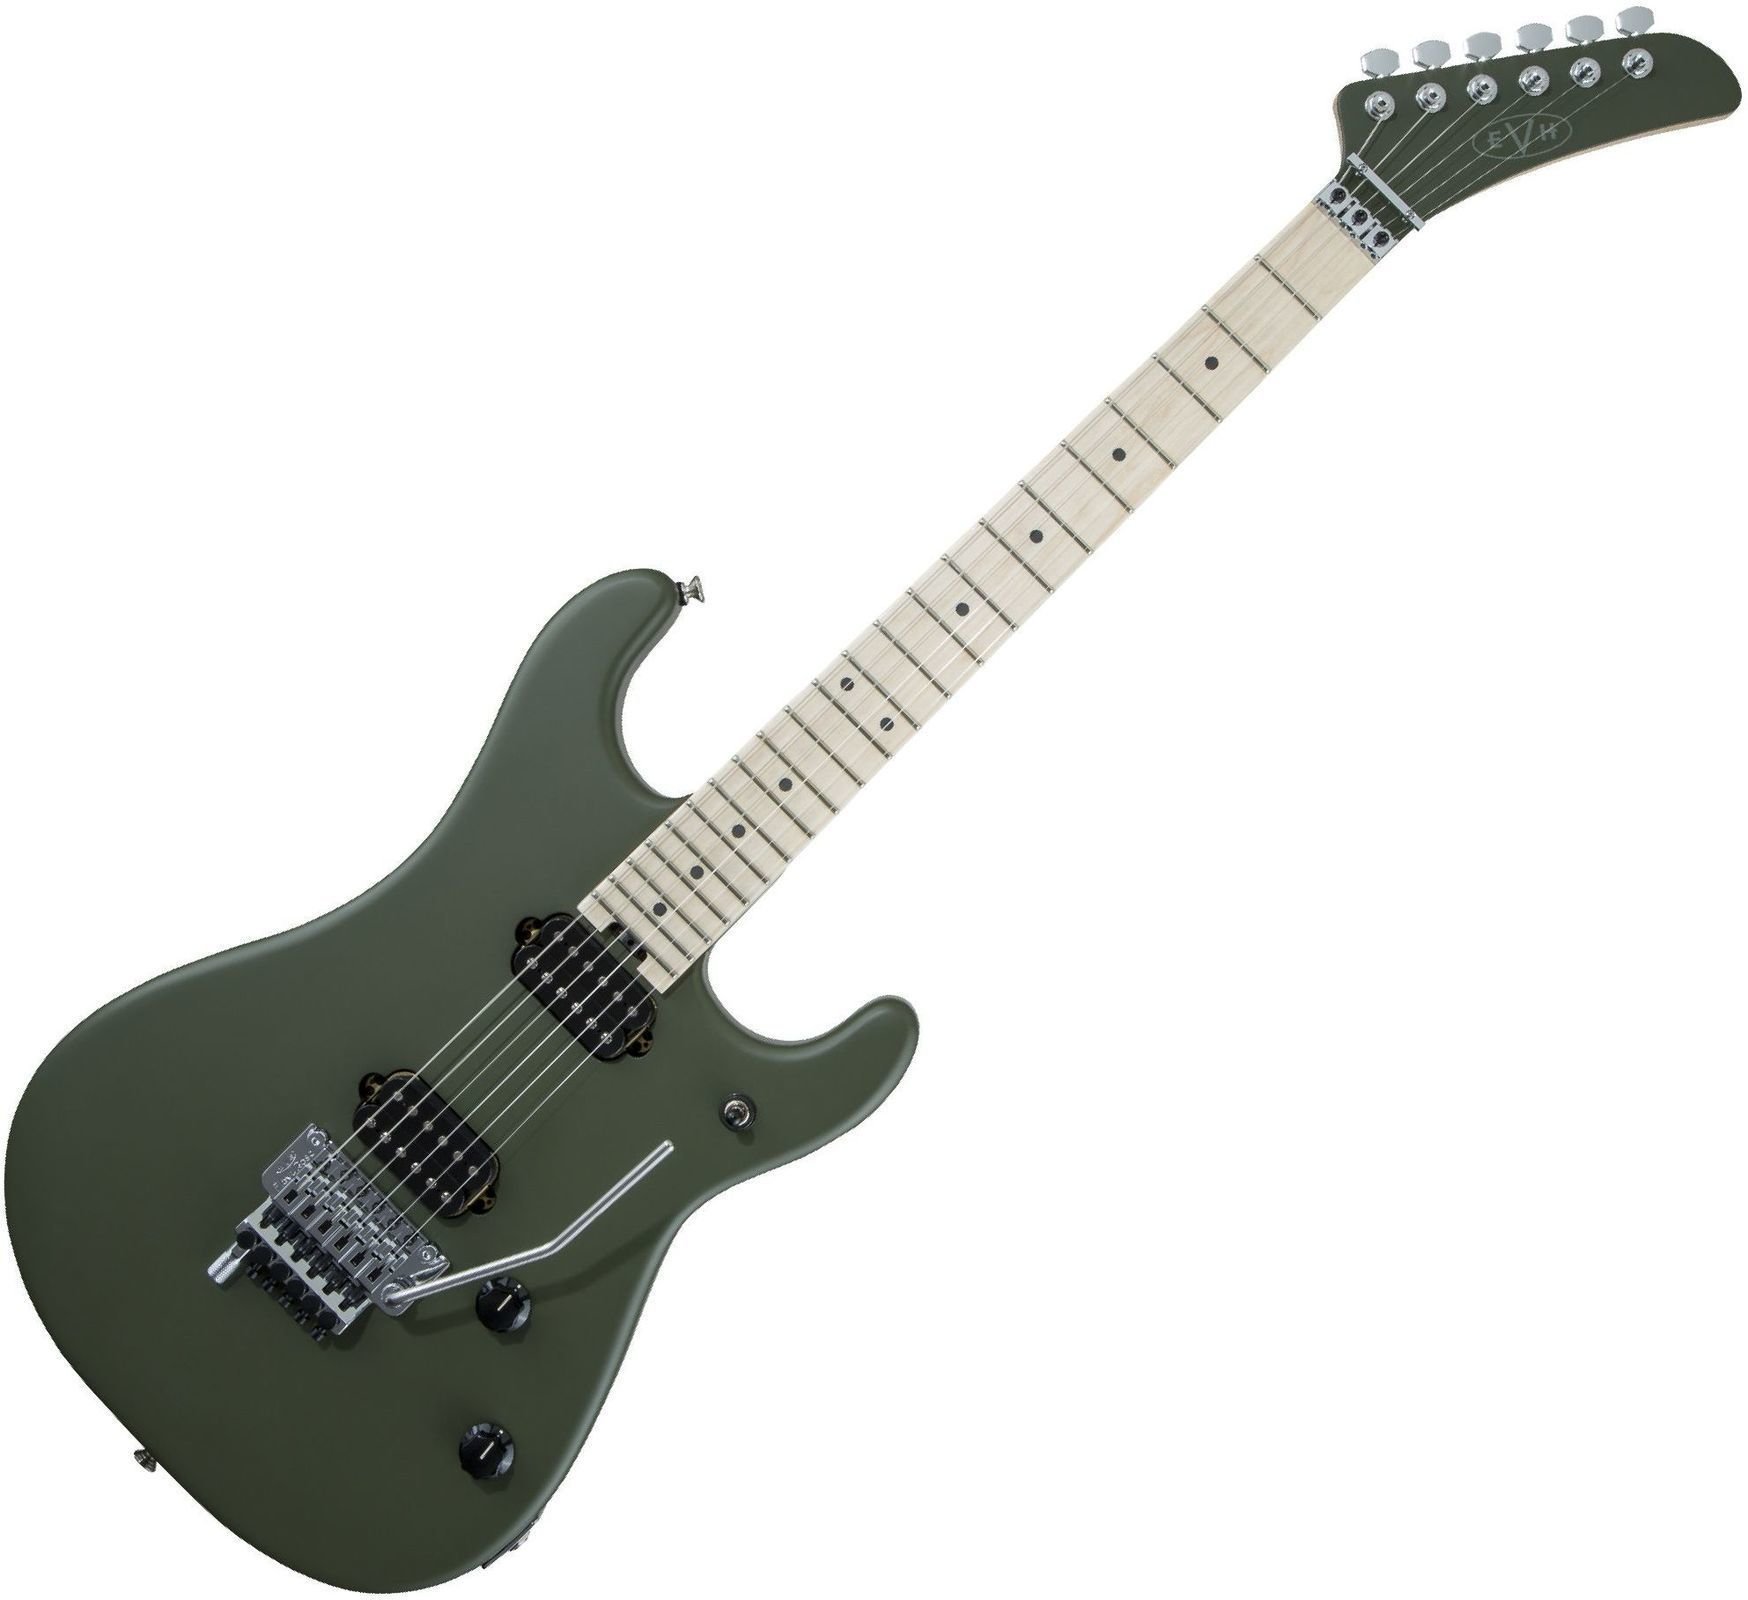 E-Gitarre EVH 5150 Series Standard MN Matte Army Drab